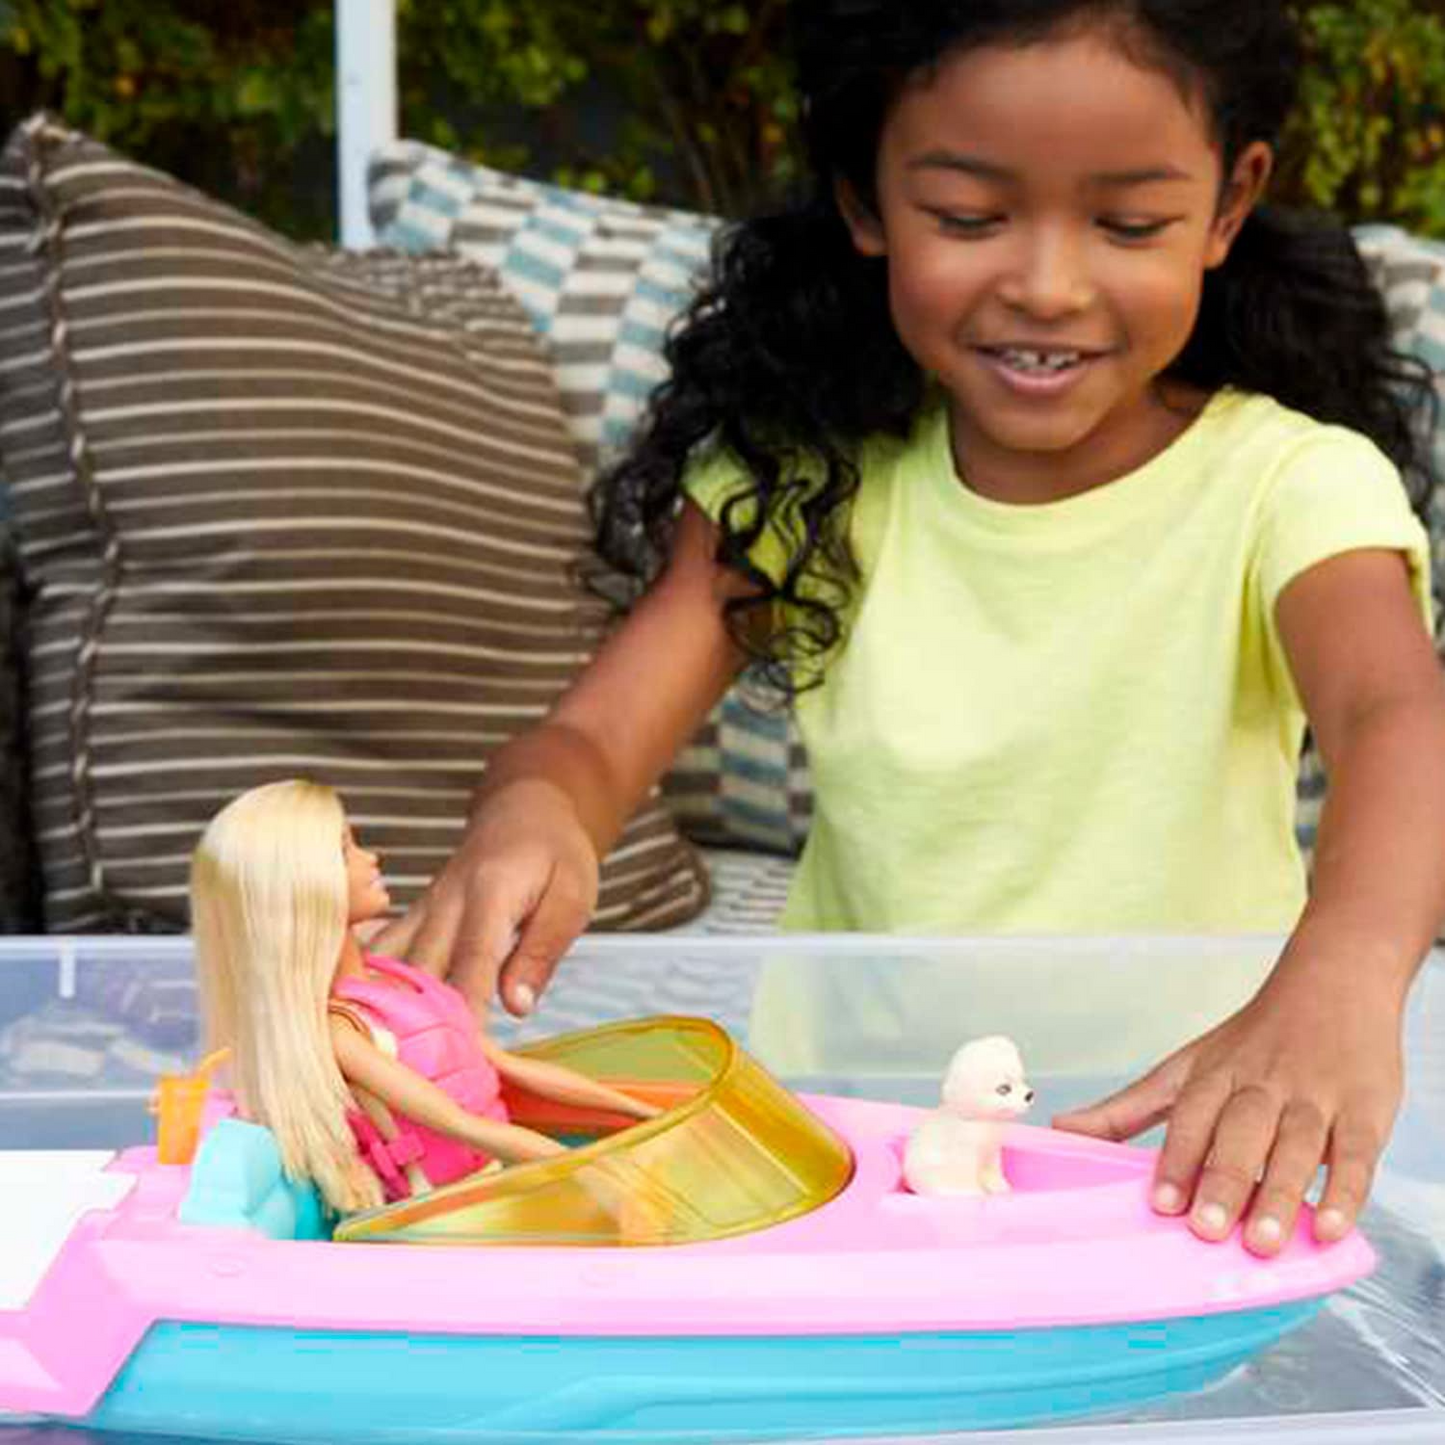 Barbie Playset de boneca e barco com cachorrinho de estimação, colete salva-vidas e acessórios, cabe 3 bonecas e flutua na água, presente para crianças de 3 a 7 anos - GRG30